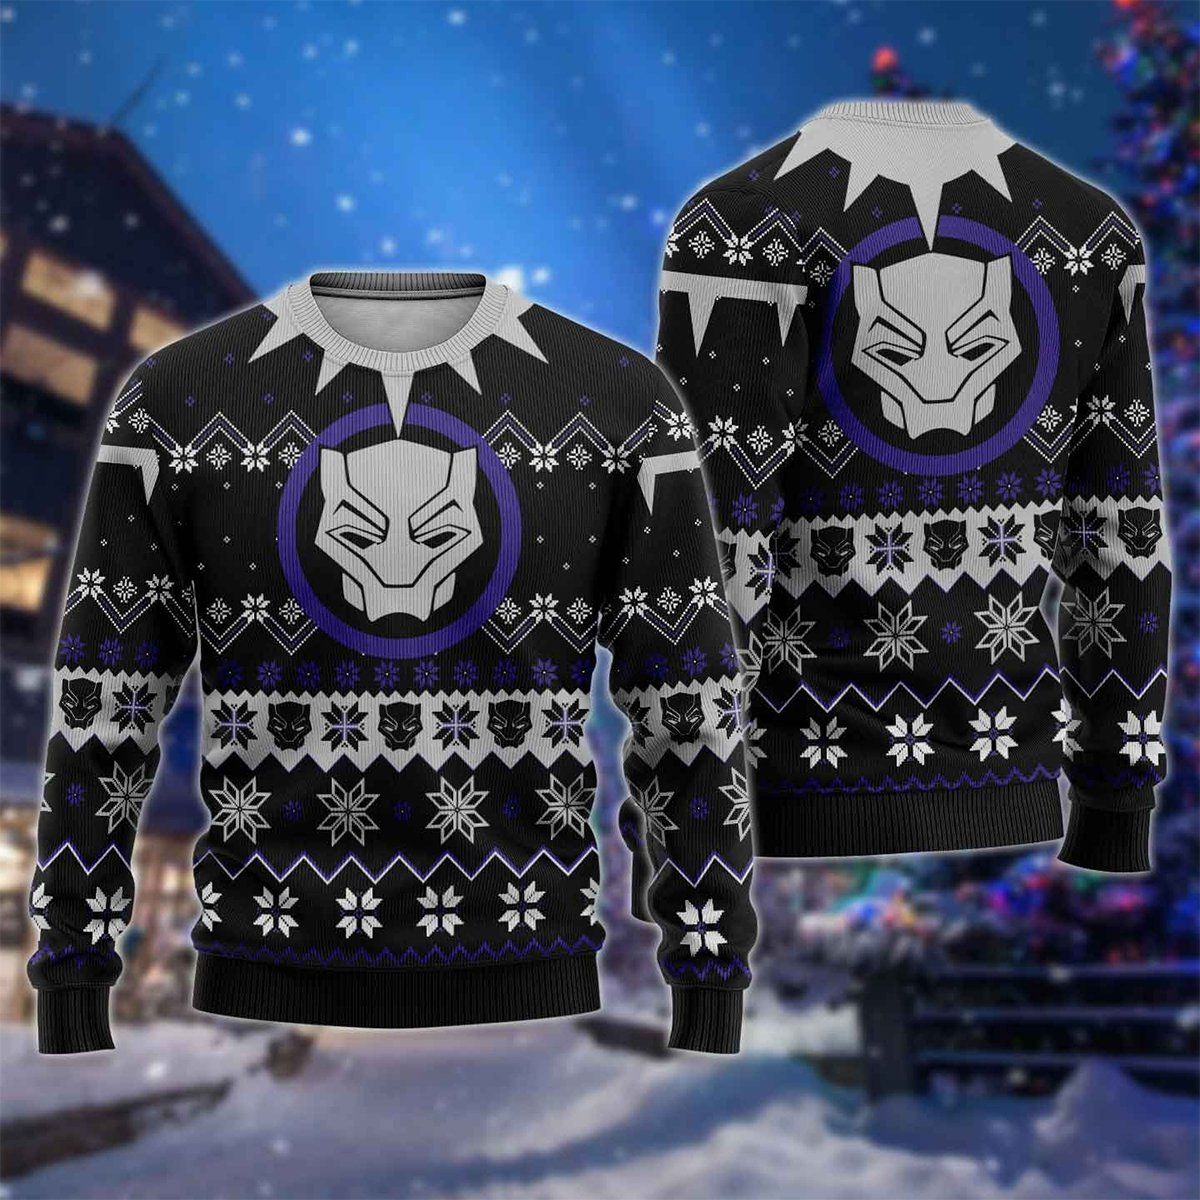 Black Panther Marvel Ugly Sweater, Black Panther Marvel Christmas Gift, Black Panther Marvel Shirt